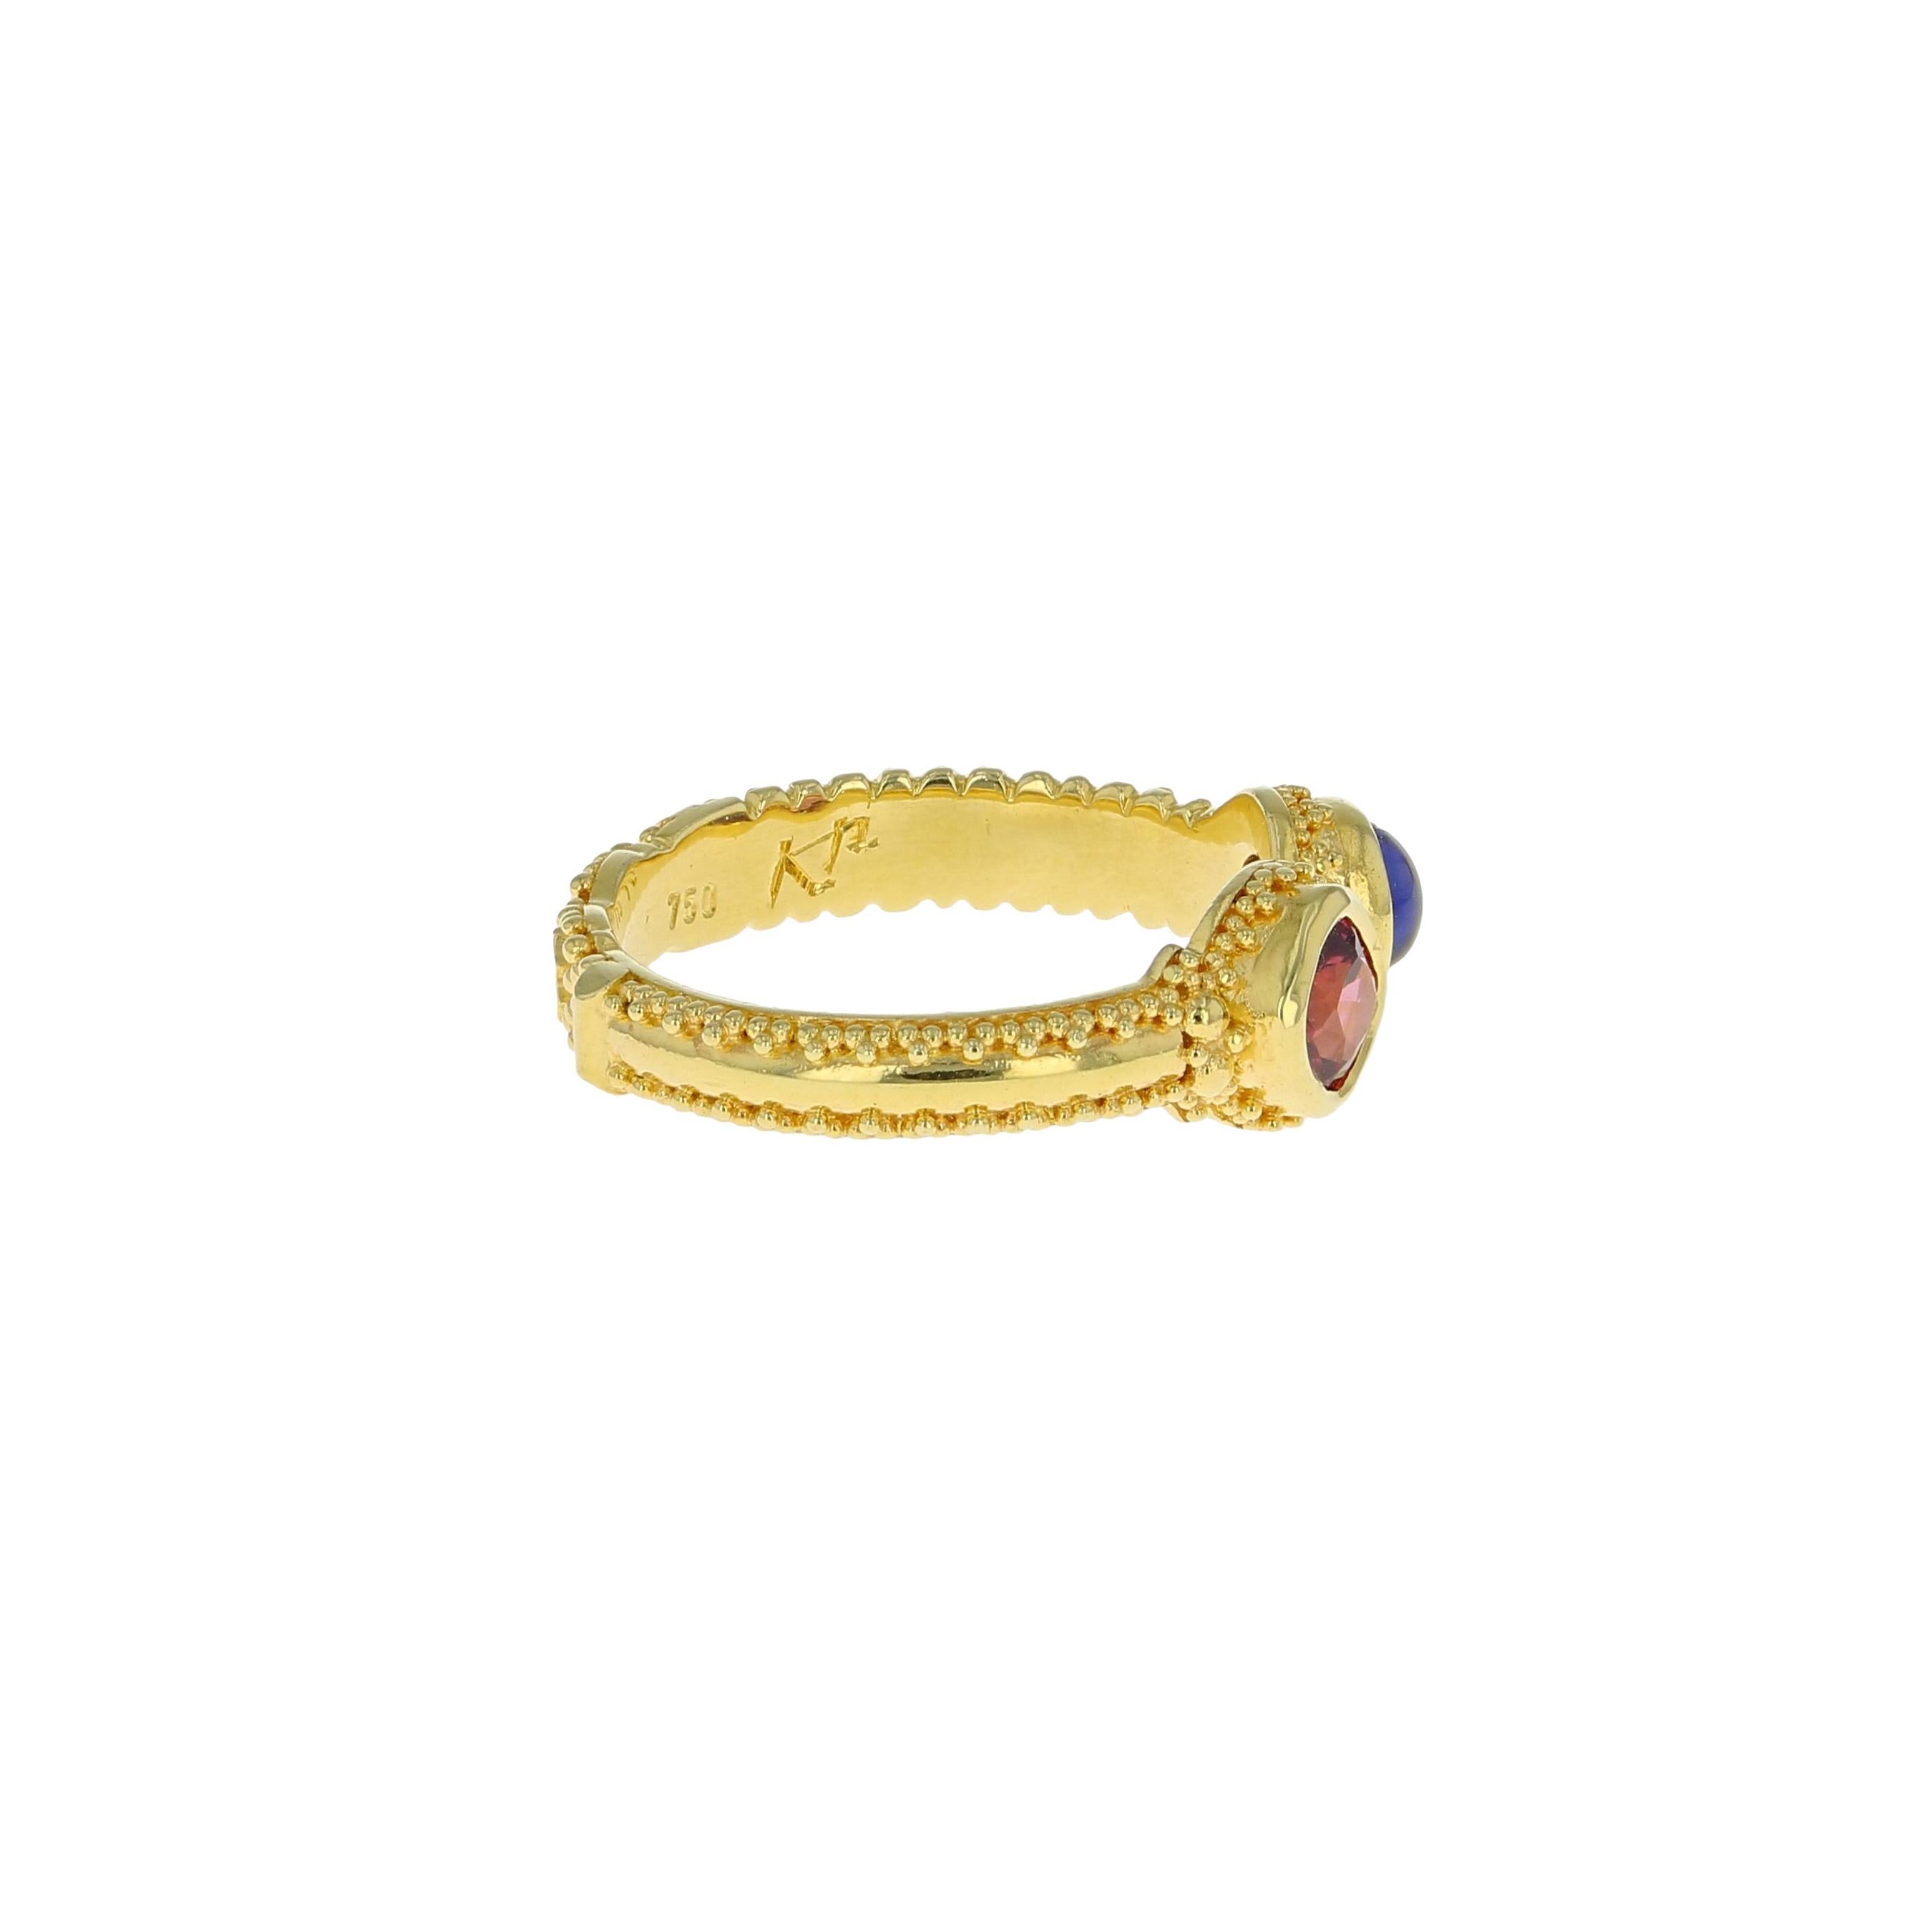 Artisan Kent Raible 18 Karat Gold Rhodolite Garnet and Iolite Ring with Gold Granulation